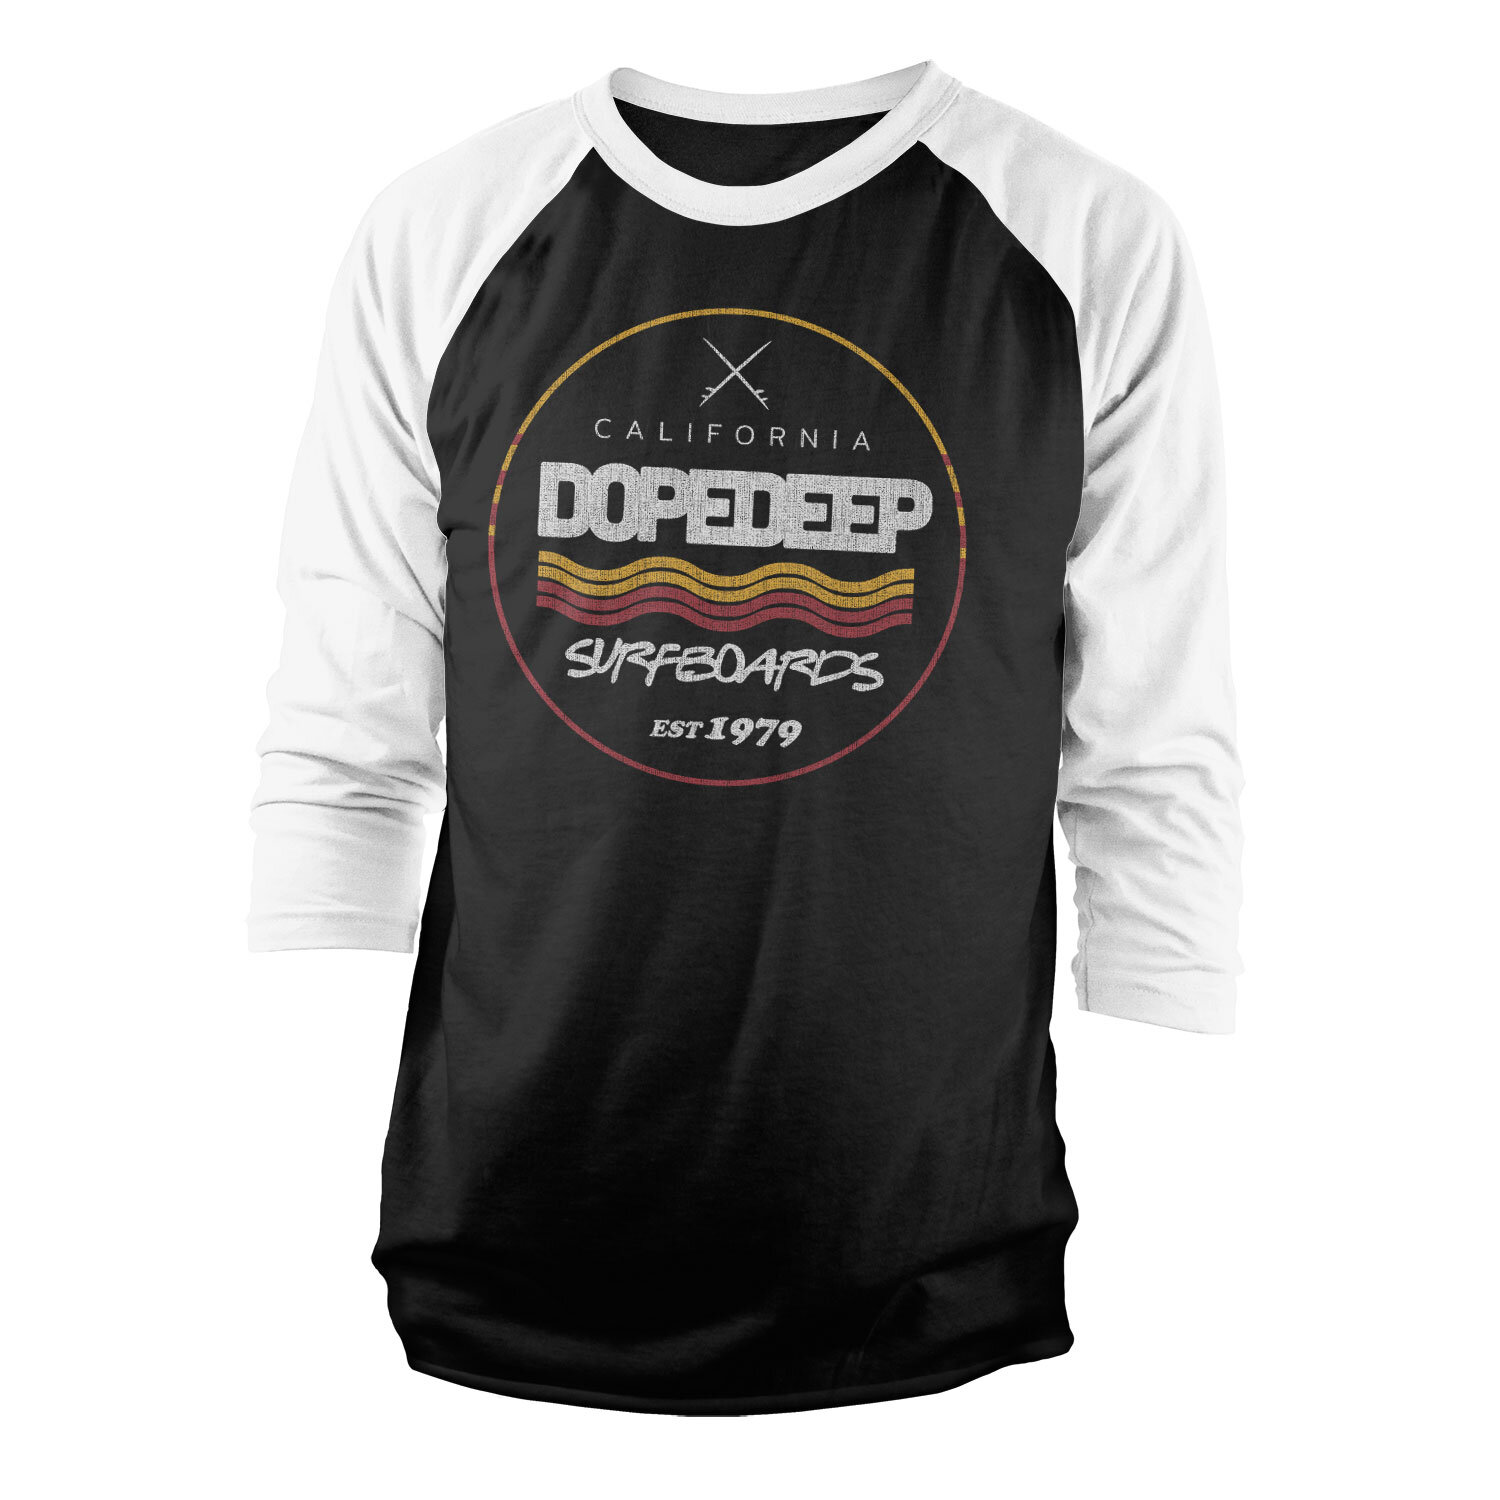 DopeDeep Surfboards Since 1979 Baseball 3/4 Sleeve Tee